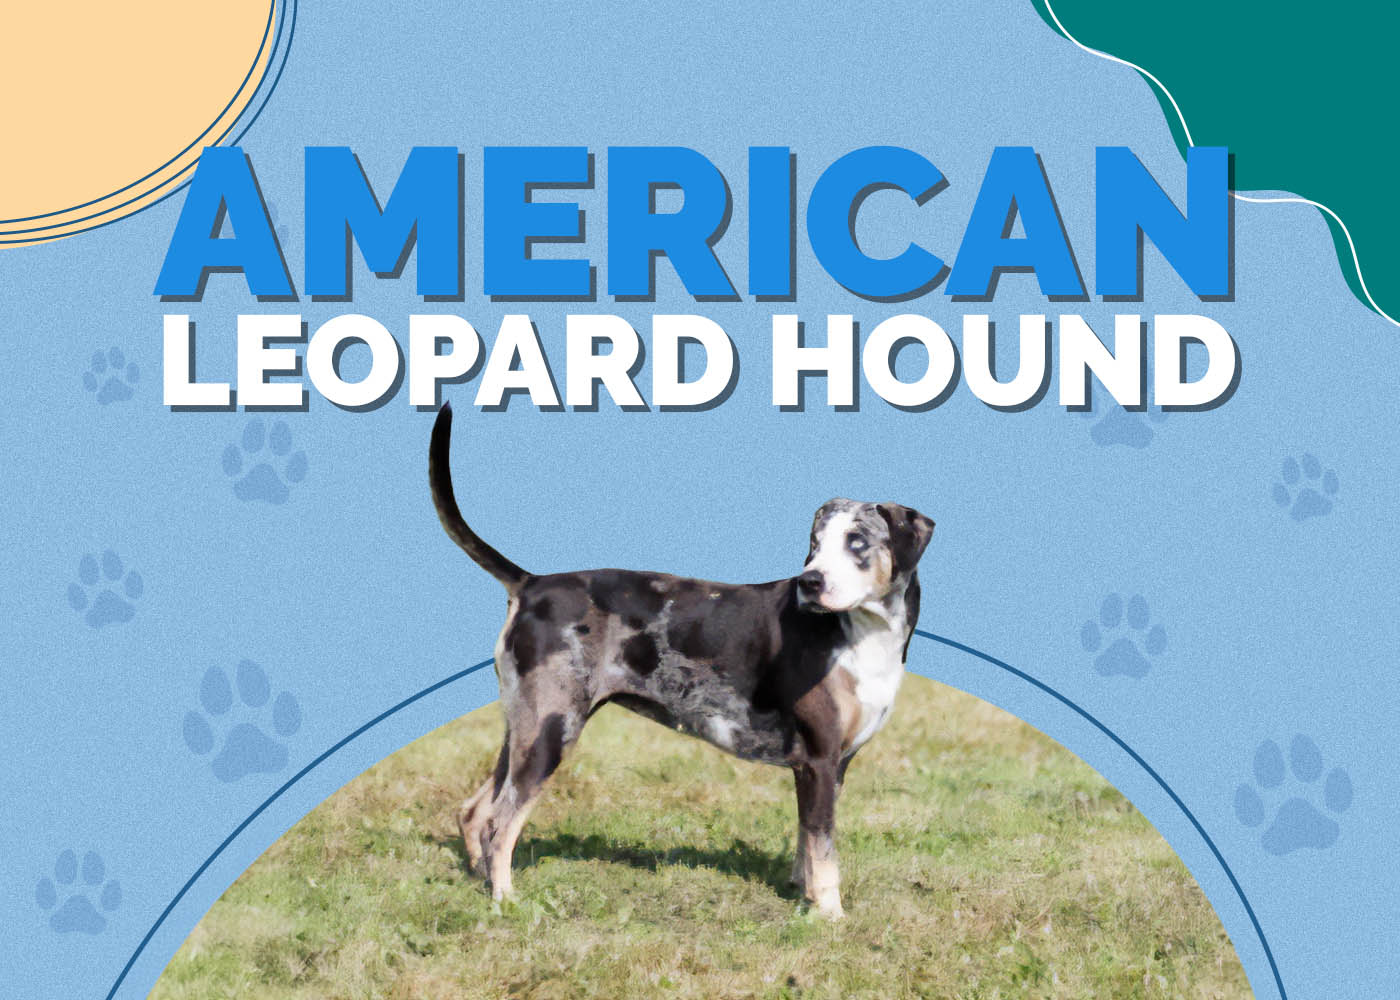 American Leopard Hound